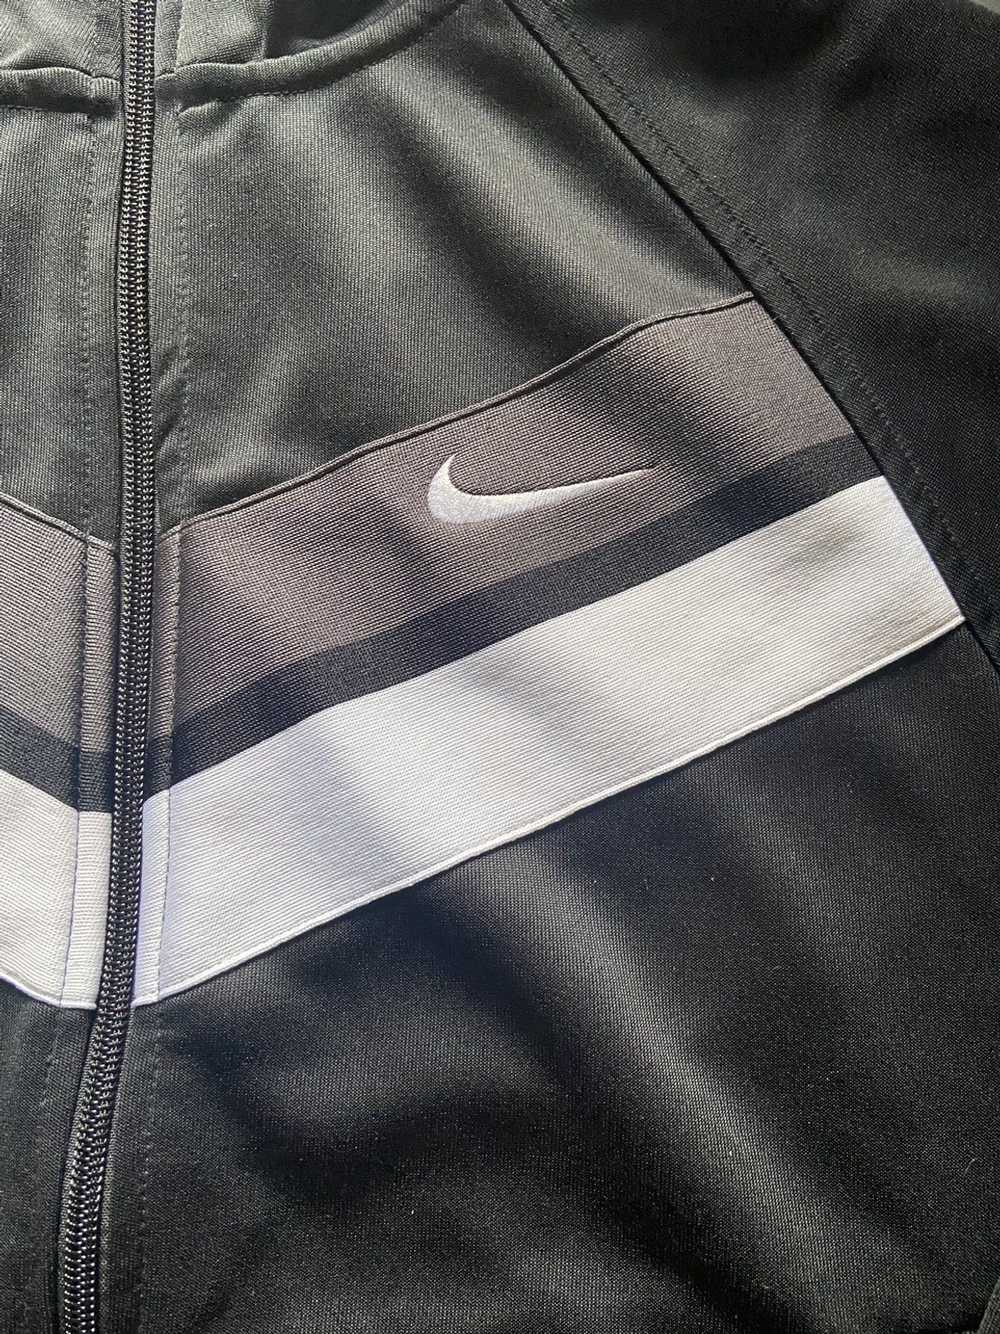 Nike Nike jacket - image 4